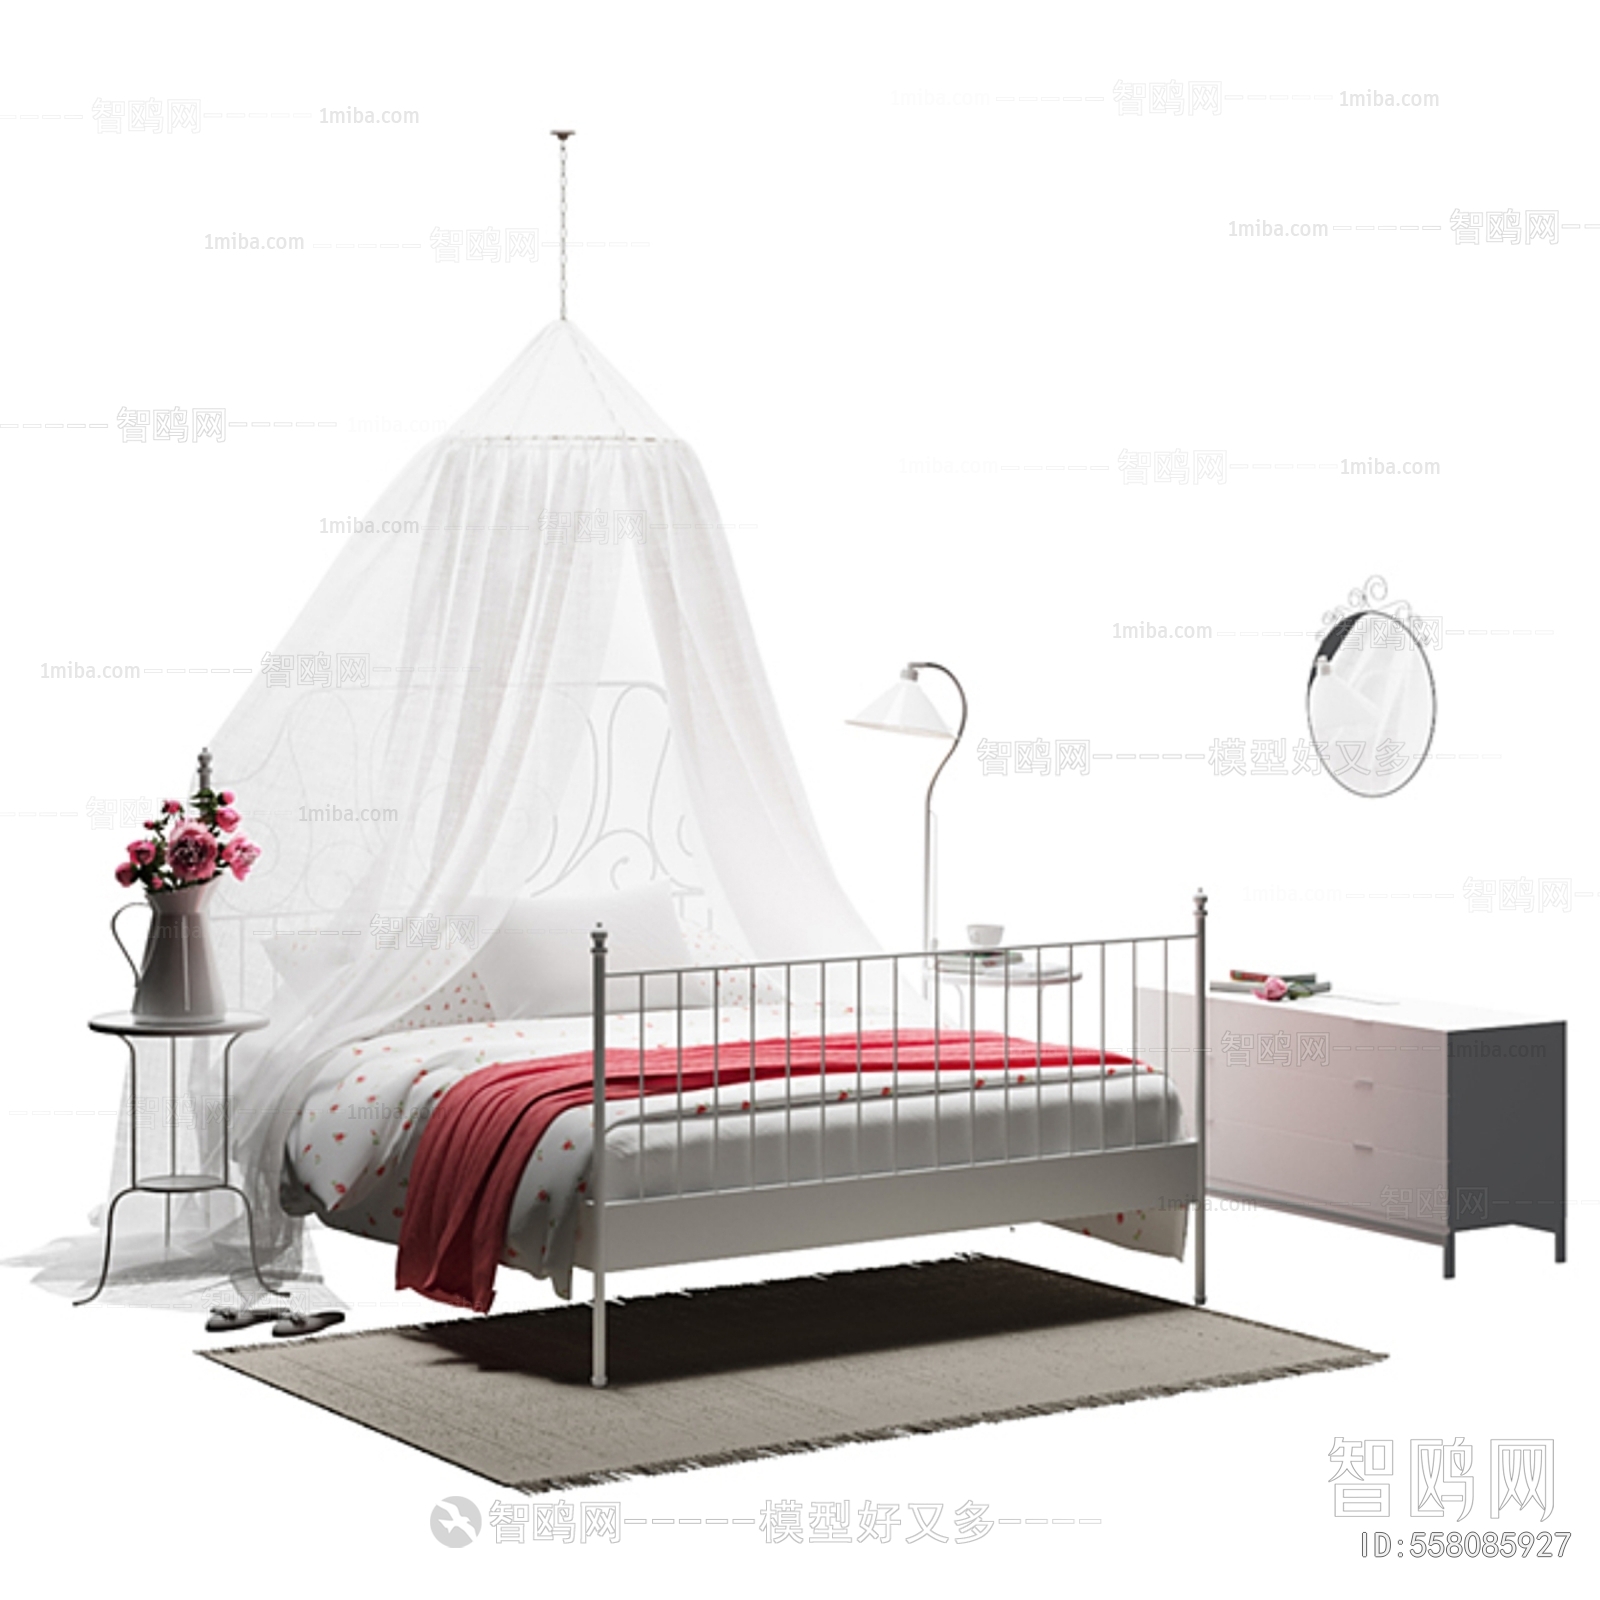 European Style Idyllic Style Double Bed